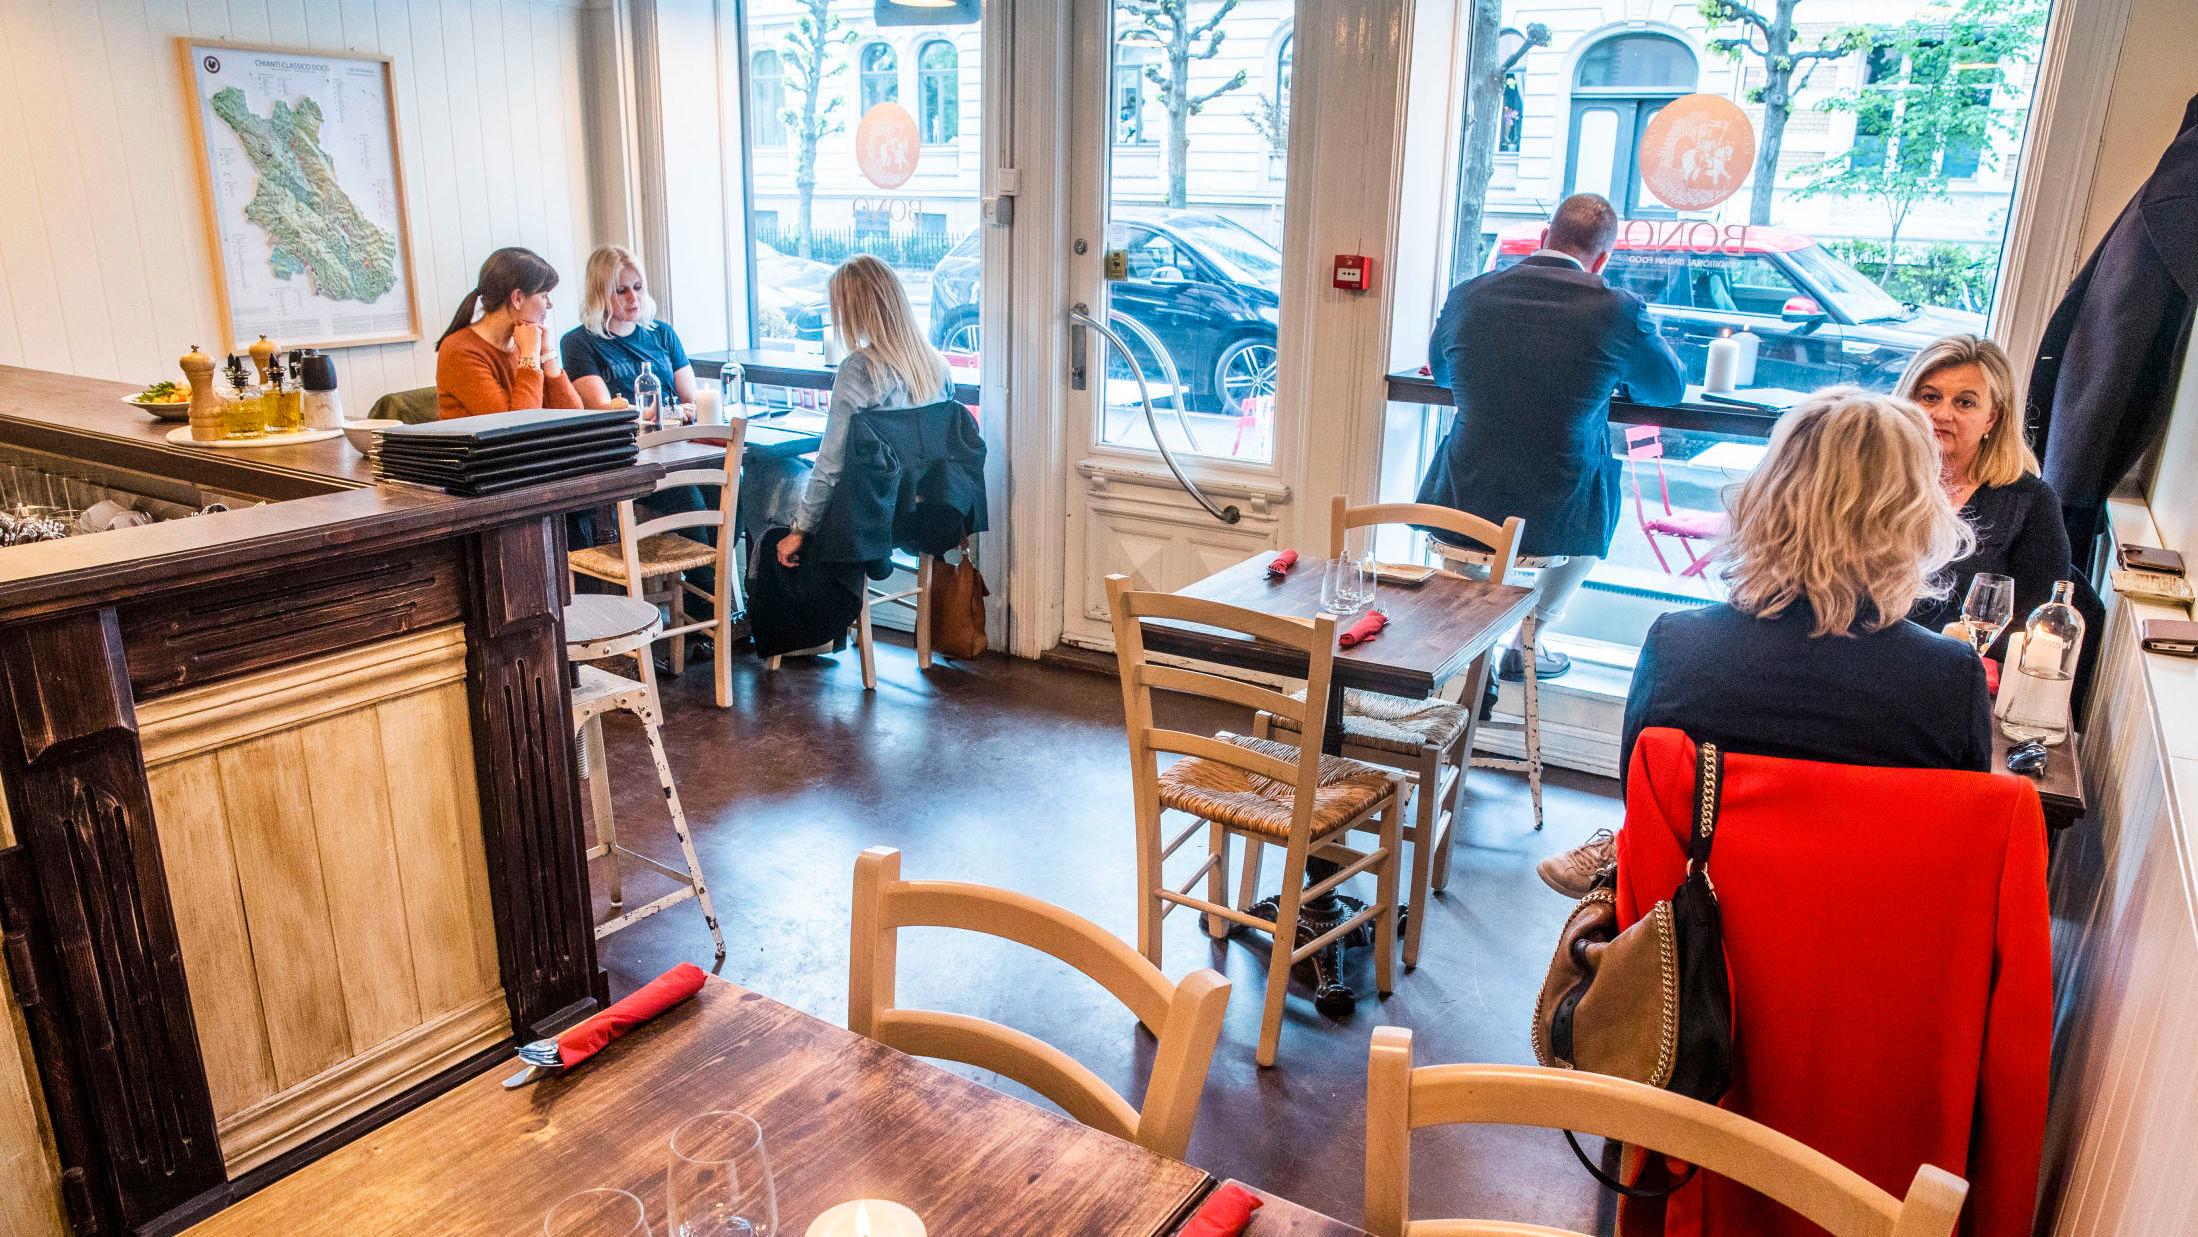 TOPPSCORE: Den italienske restauranten Bono ved Bygdøy Allé i Oslo får terningkast 6 av VGs anmelder. Foto: Frode Hansen/VG